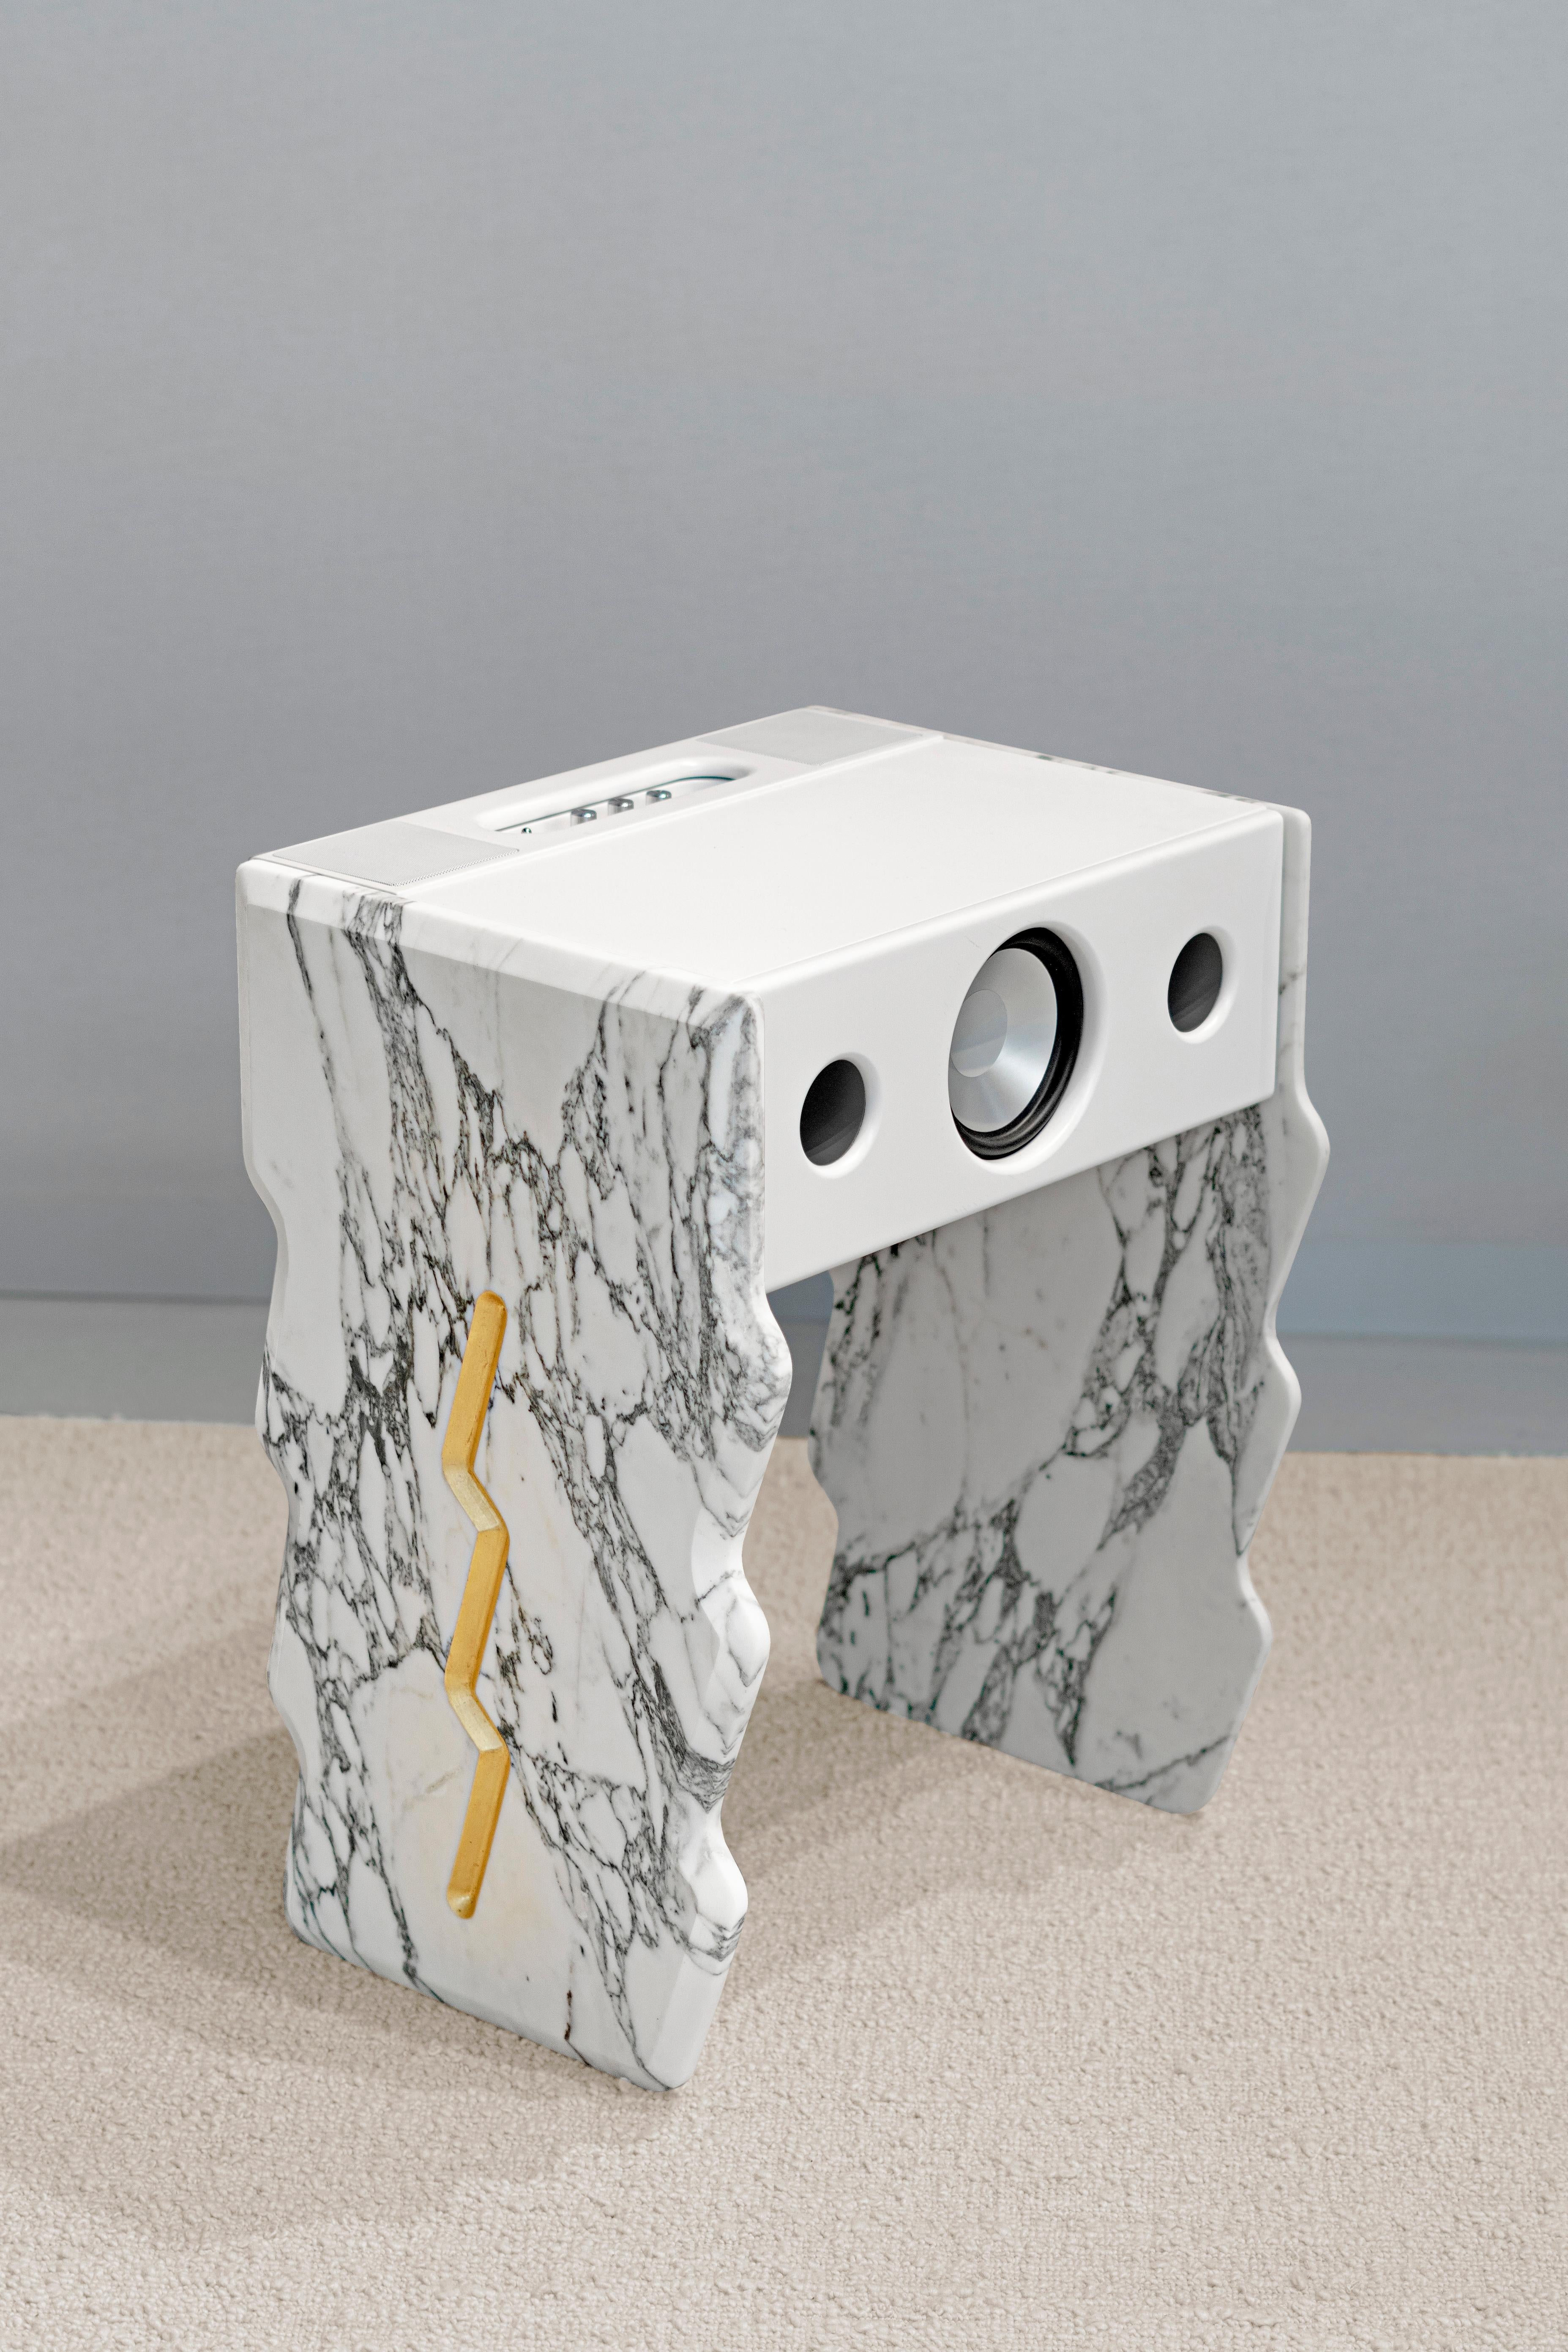 Hohe Würfel Thunder Acoustic Furniture von SB26
Abmessungen: B 38 x T 48 x H 62 cm
MATERIALIEN: Beine aus Marmor St. Laurent & Arabescato, Blattvergoldung, Leder.
Gewicht 30 kg.

In Anlehnung an den Cube (von Samuel für la Boite Concept entworfene